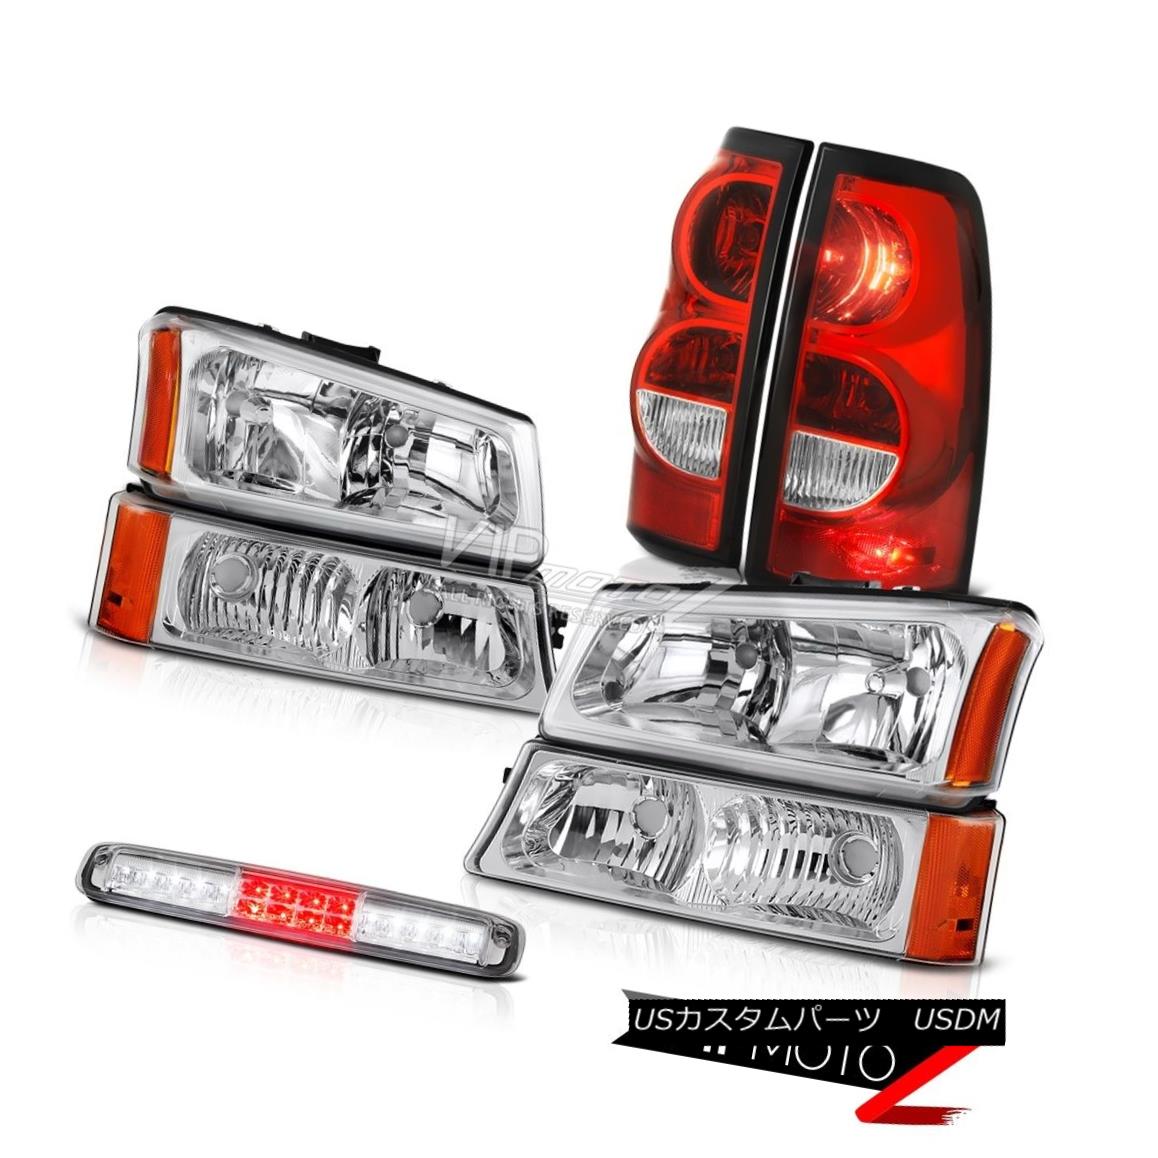 2003-2006 Silverado Euro Clear Bumper Light 3RD Brake Red Rear Lamps Headlightsカテゴリヘッドライト状態新品メーカーChevrolet車種Silverado 1500発送詳細送料一律 1000円（※北海道、沖縄、離島は省く）商品詳細輸入商品の為、英語表記となります。 Condition: New Brand: Venom Inc. [Headlight] Side: Driver&Passenger Side Provided Manufacturer Part Number: OEM#A7703H_2003_2004_2005_2006_A34443 [Tail Light] Brake: PY27 Bulbs Included Interchange Part Number: 10396913/10396912/19169003/19169002/15199557 [Tail Light] Dashboard Light: Error-Free Other Part Number: GM2502224/GM2503224,GM2801161/GM2800161,GM2521185 [Tail Light] Parking: PY27 Bulbs Included Placement on Vehicle: Left, Right, Front, Rear [Tail Light] Reverse: PY27 Bulbs Included Warranty: 60 Day [Tail Light] Side: Driver & Passenger Included [Headlight] Low Beam Bulb: Re-use Original 9006 Bulbs [Tail Light] Signal: PY27 Bulbs Included [Headlight] DOT & SAE: Approved Contact Us: TEL: 1-844-884-7847 | HOURS: 9am - 6pm PST [Headlight] High Beam Bulb: Re-use Original 9005 Bulbs Returns: 60-Days LOVE IT or RETURN IT!※以下の注意事項をご理解頂いた上で、ご入札下さい※■海外輸入品の為、NC,NRでお願い致します。■フィッテングや車検対応の有無については、画像と説明文よりお客様の方にてご判断をお願いしております。■USのカスタムパーツは国内の純正パーツを取り外した後、接続コネクタが必ずしも一致するとは限らず、加工が必要な場合がございます。■商品説明文中に英語にて”保障”に関する記載があっても適応はされませんので、ご理解ください。■初期不良（到着より7日以内）のみ保証対象とします。ただし、取り付け後は、保証対象外とします。■海外倉庫から到着した製品を、再度国内で検品を行い、日本郵便または佐川急便にて発送となります。■お届けまでには、2〜3週間程頂いております。ただし、天候次第で多少遅れが発生する場合もあります。■商品落札後のお客様のご都合によるキャンセルはお断りしておりますが、商品落札金額の30％の手数料をいただいた場合のみお受けいたします。■他にもUSパーツを多数出品させて頂いておりますので、ご覧頂けたらと思います。■USパーツの輸入代行も行っておりますので、ショップに掲載されていない商品でもお探しする事が可能です!!お気軽にお問い合わせ下さい。&nbsp;